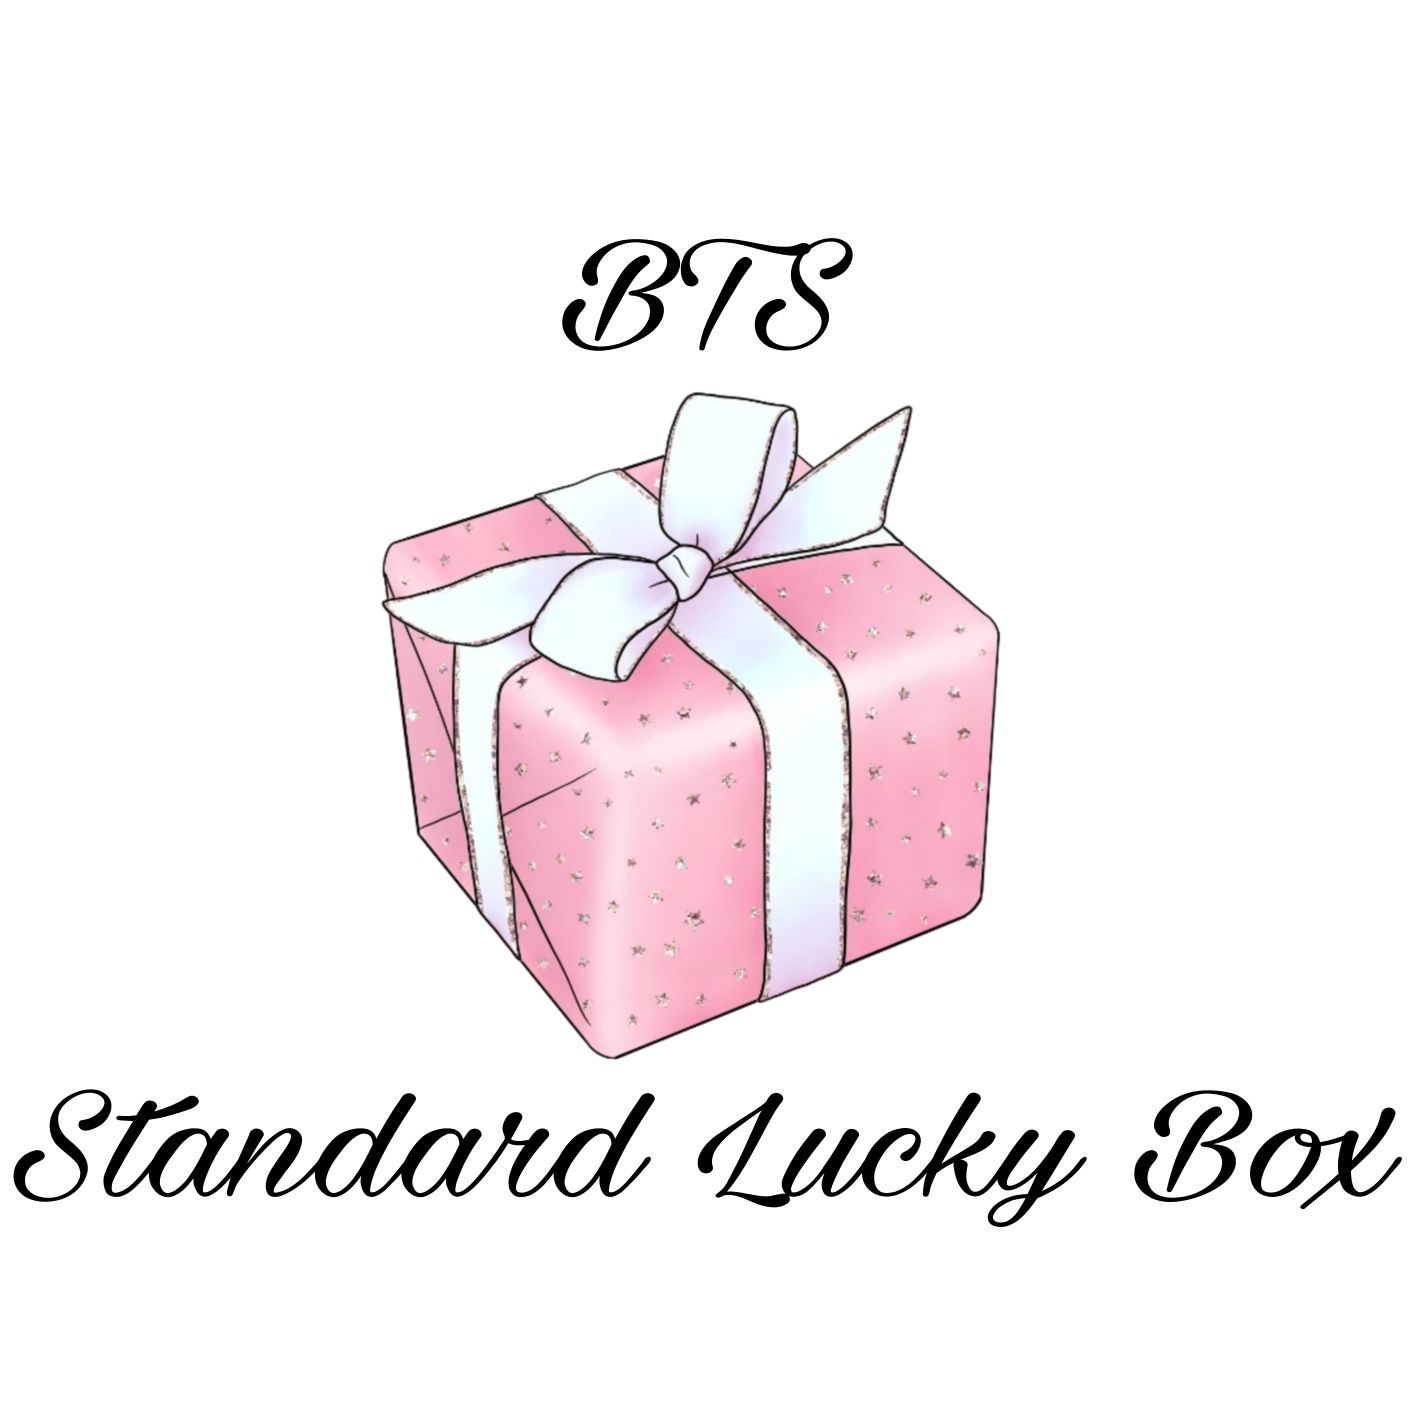 BTS Standard Lucky Box